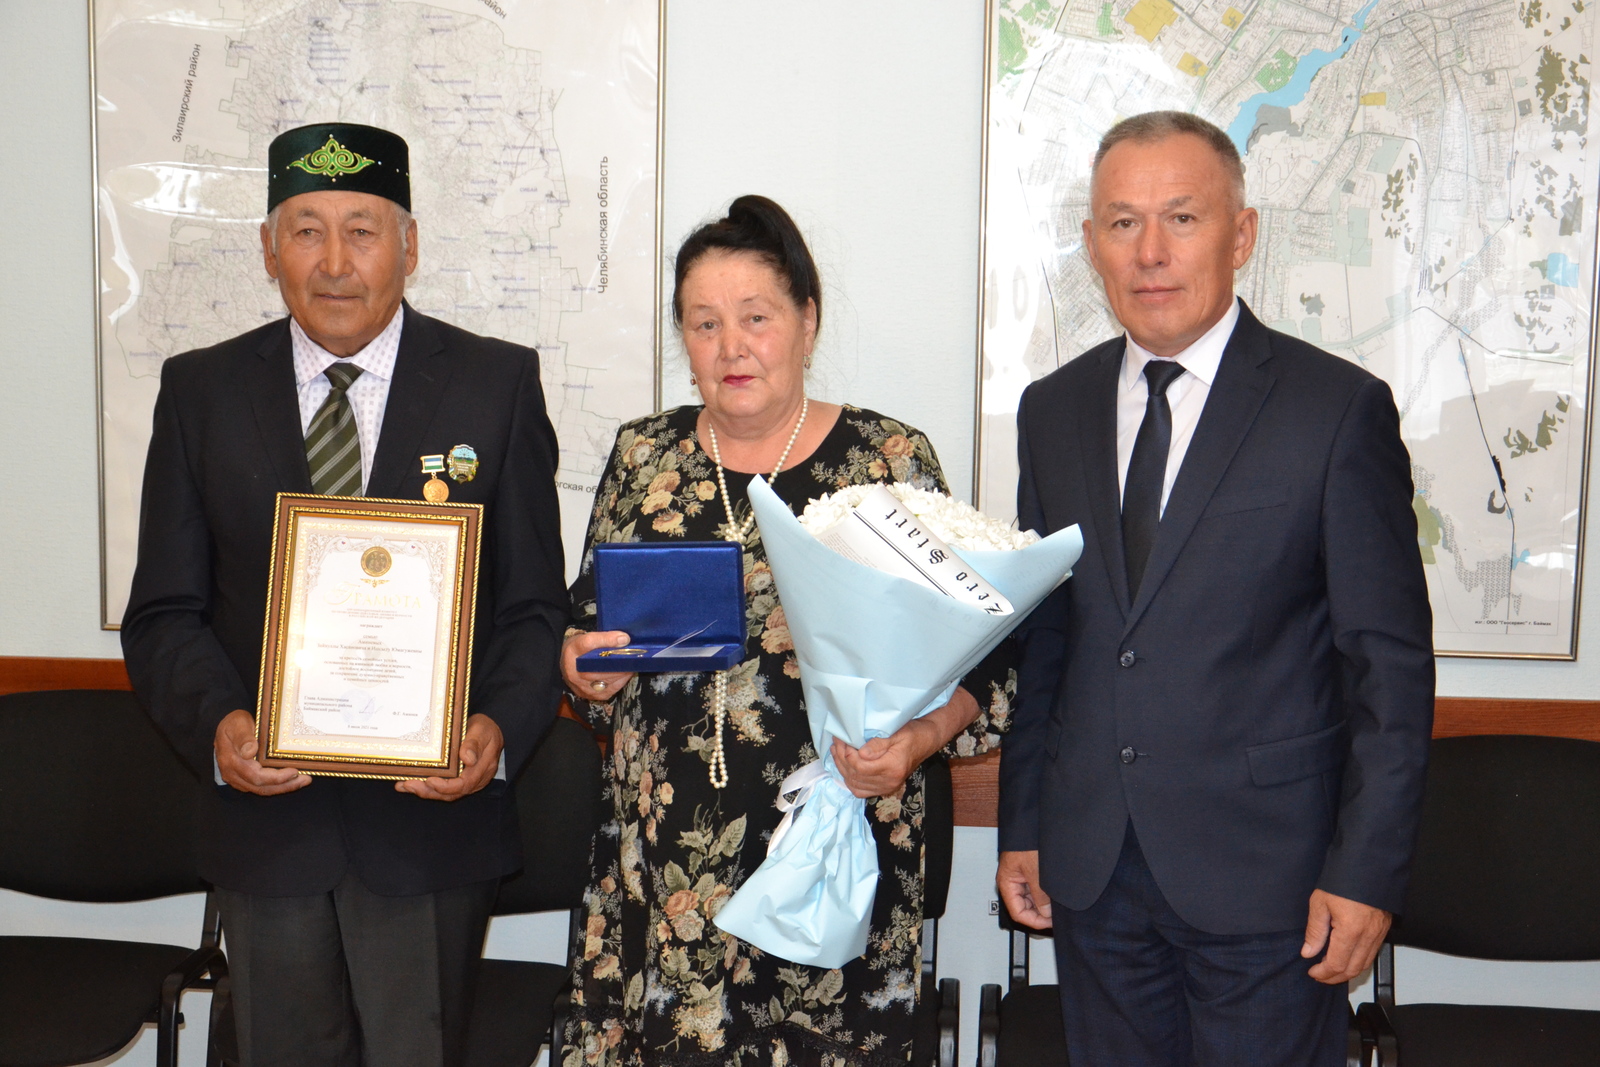 Семейная пара из деревни Семяново получила медаль «За любовь и верность»